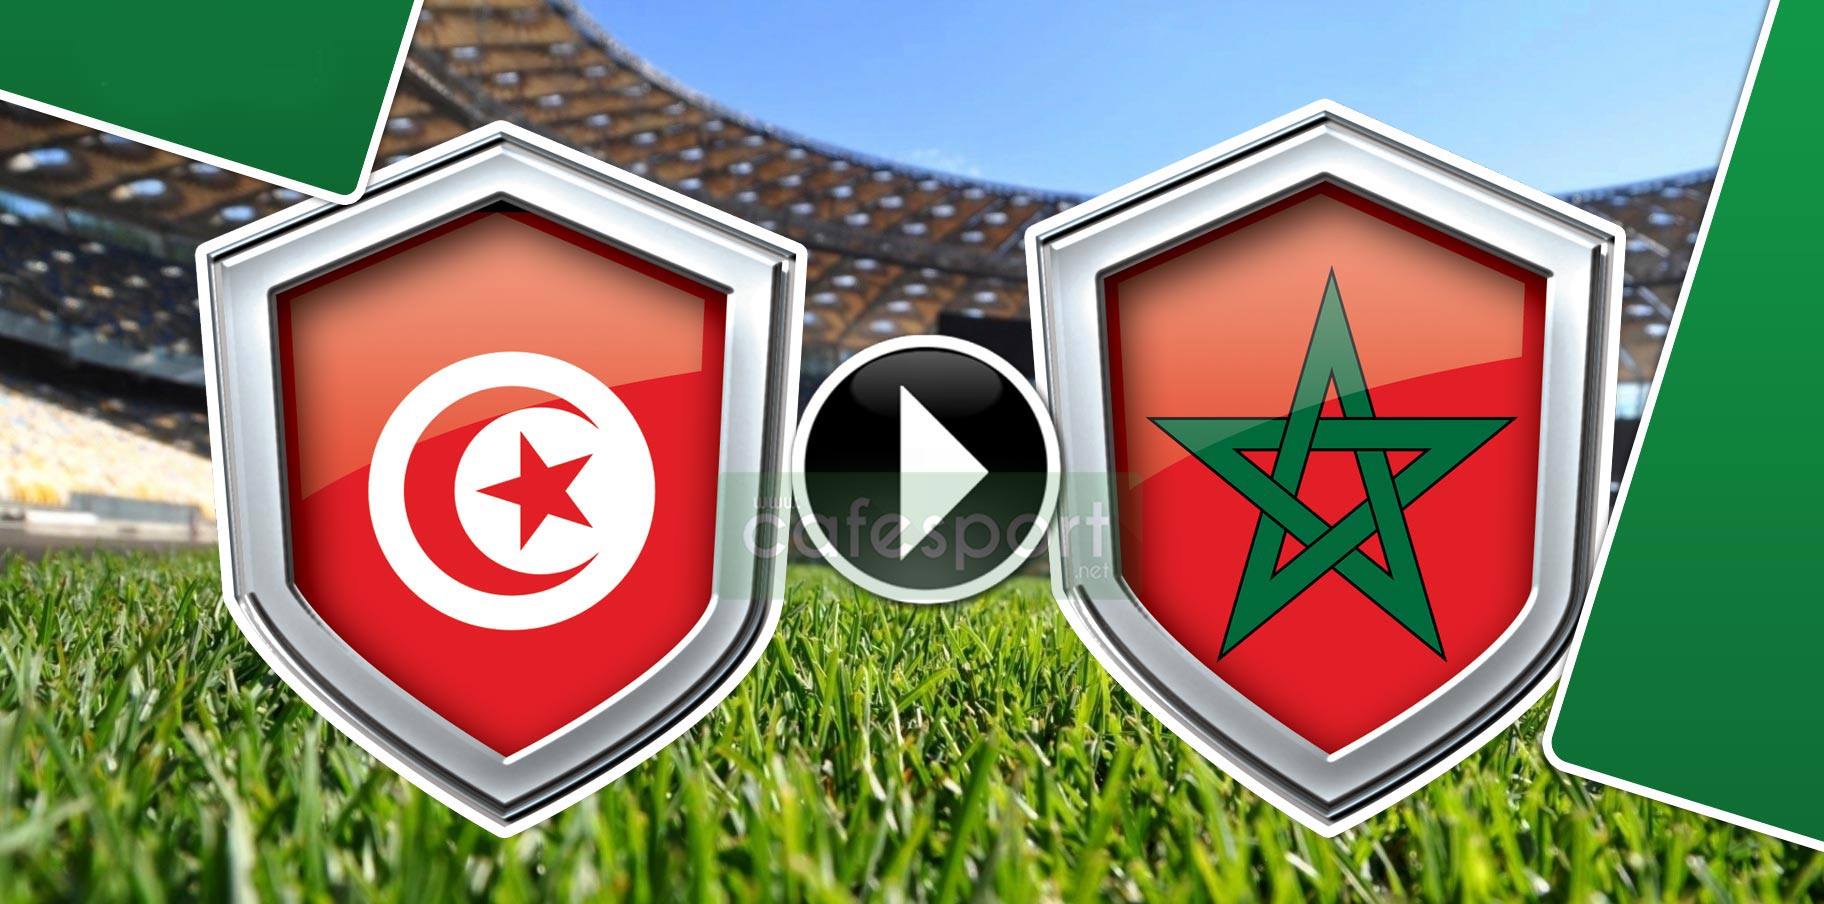 مباراة المغرب وتونس منقولة تلفزيا على هذه القنوات